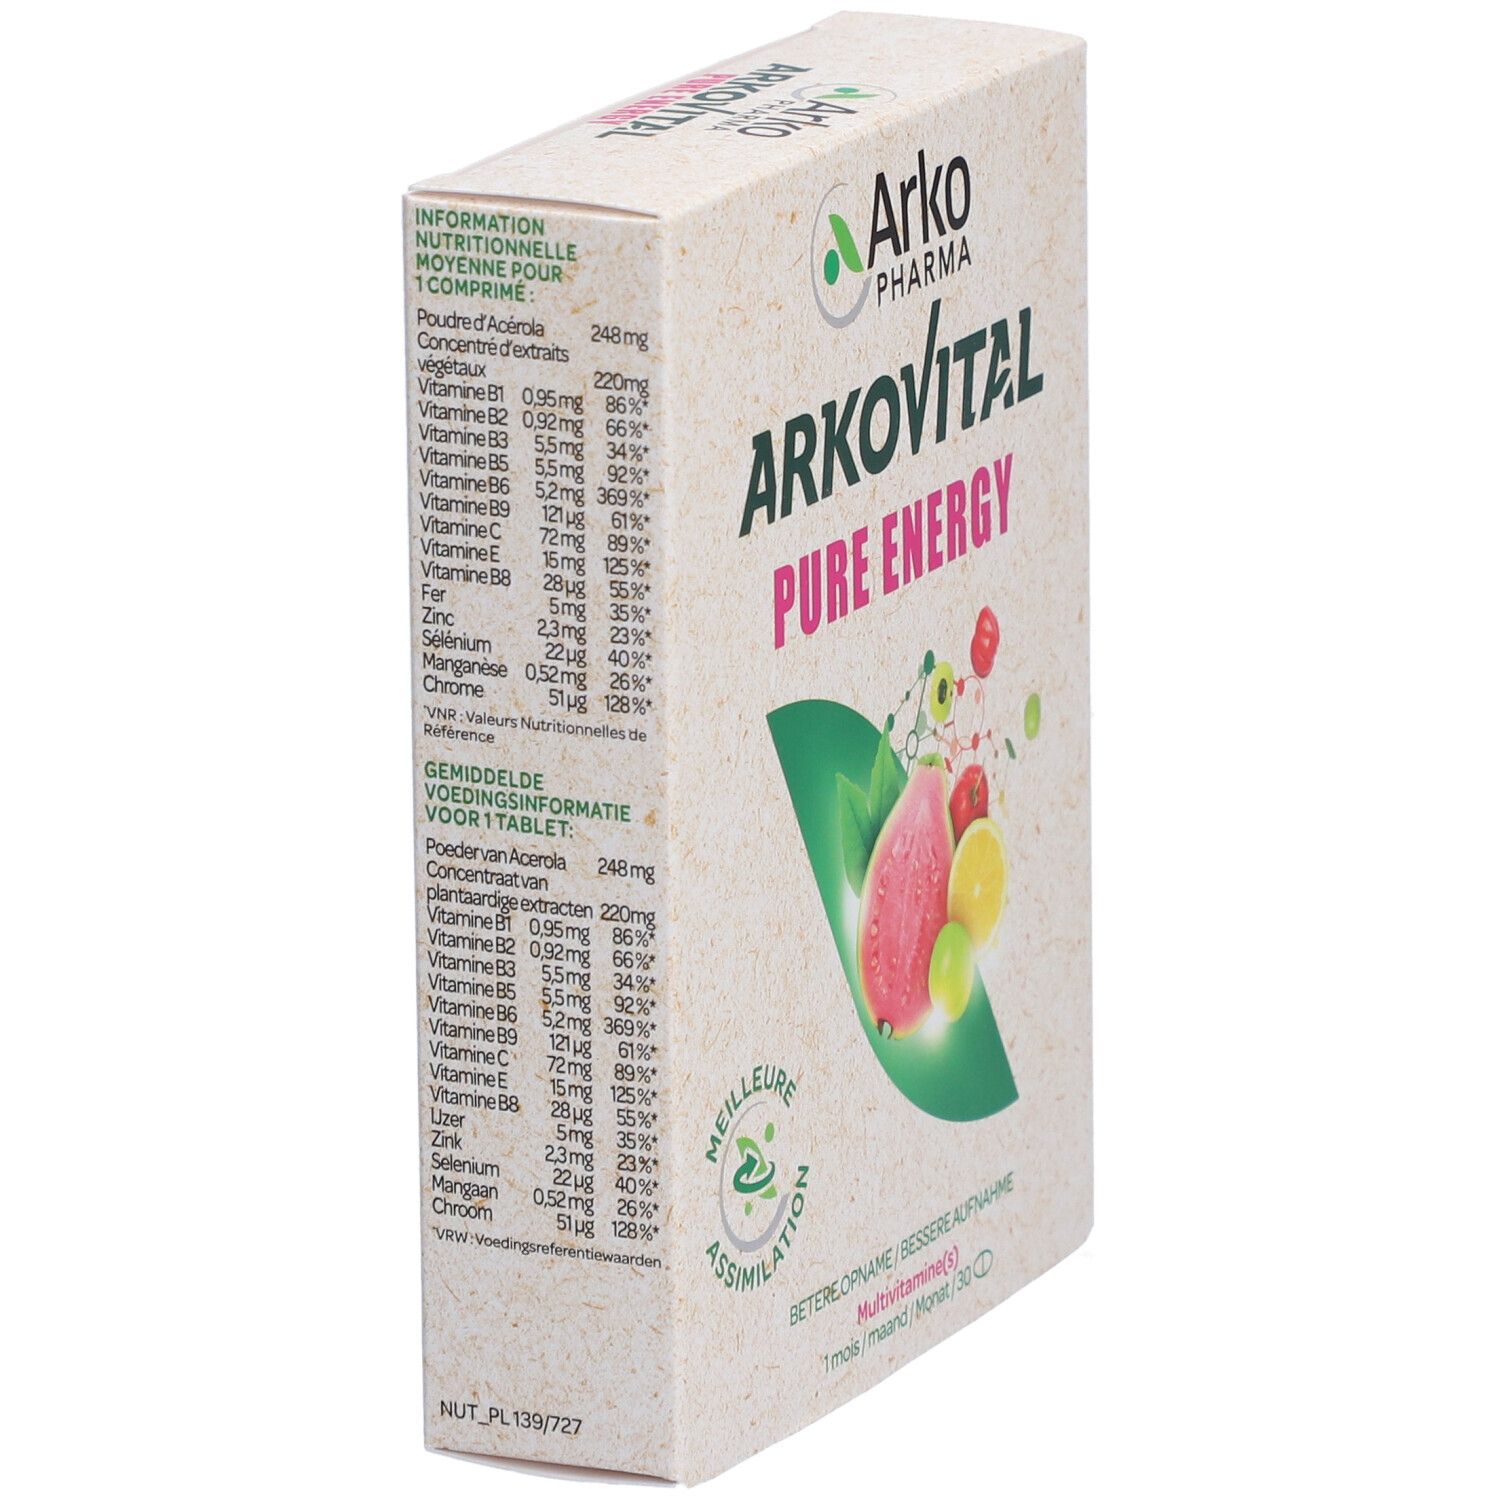 Arkovital® Pure Energy Multivitamin